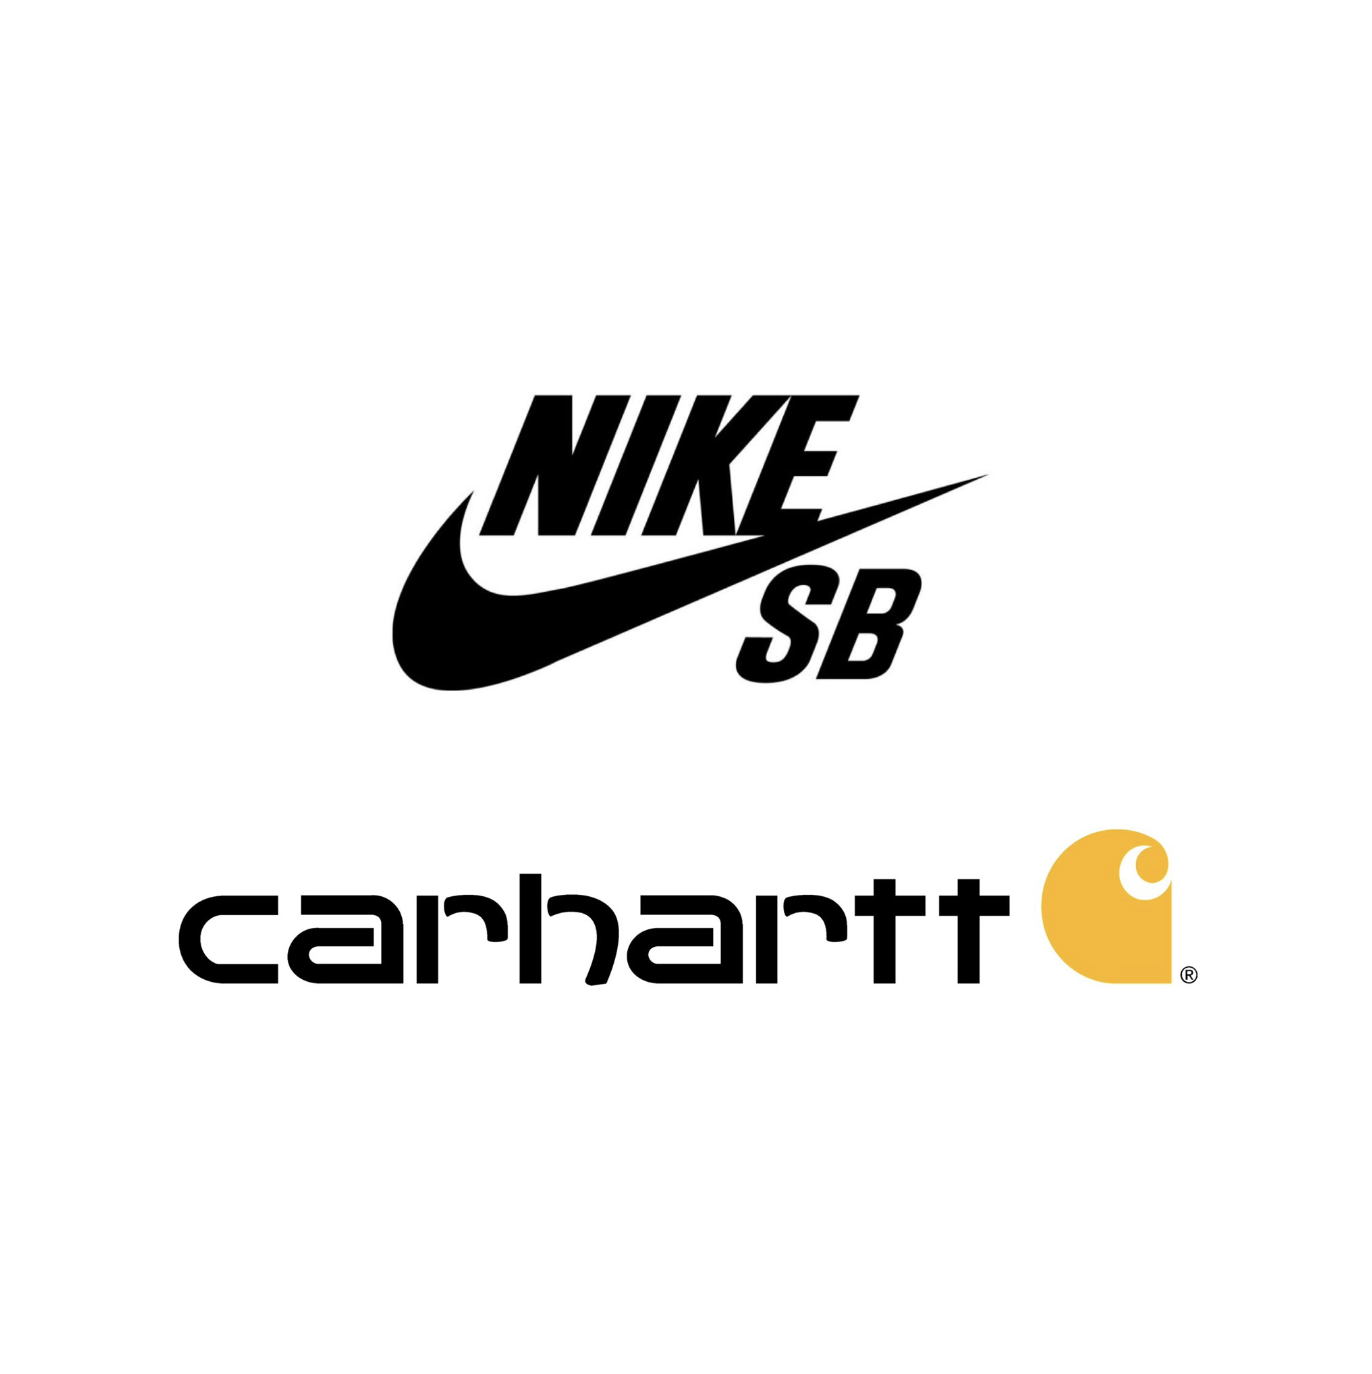 CARHARTT X NIKE SB  即將再度聯手推出聯名波鞋系列